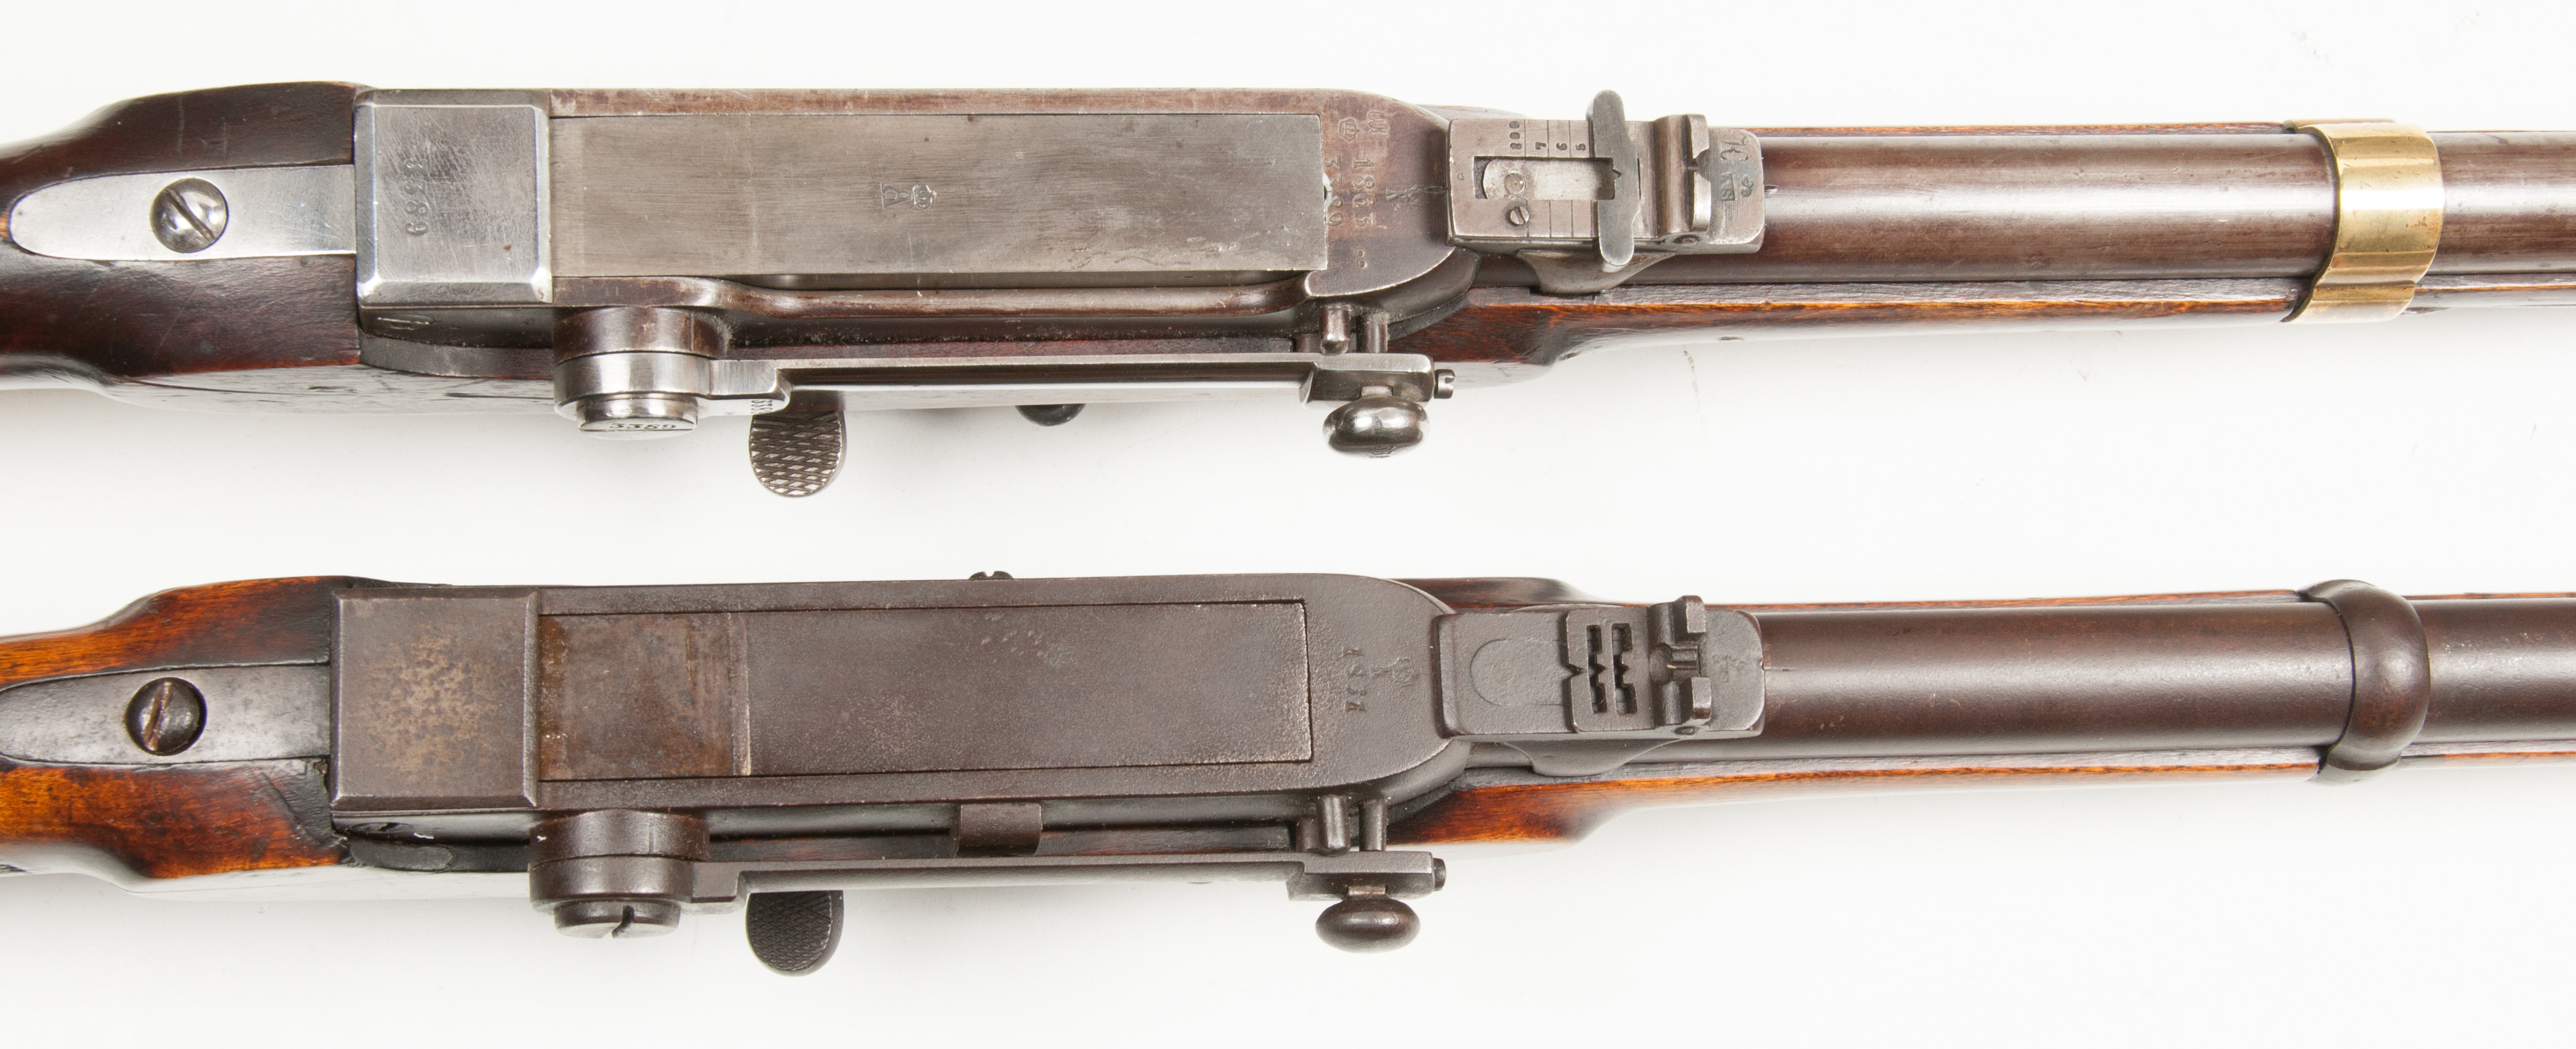 ./guns/rifle/bilder/Rifle-Kongsberg-Kammerlader-M1860-Kort-154-1861-Skytterlag-7.jpg